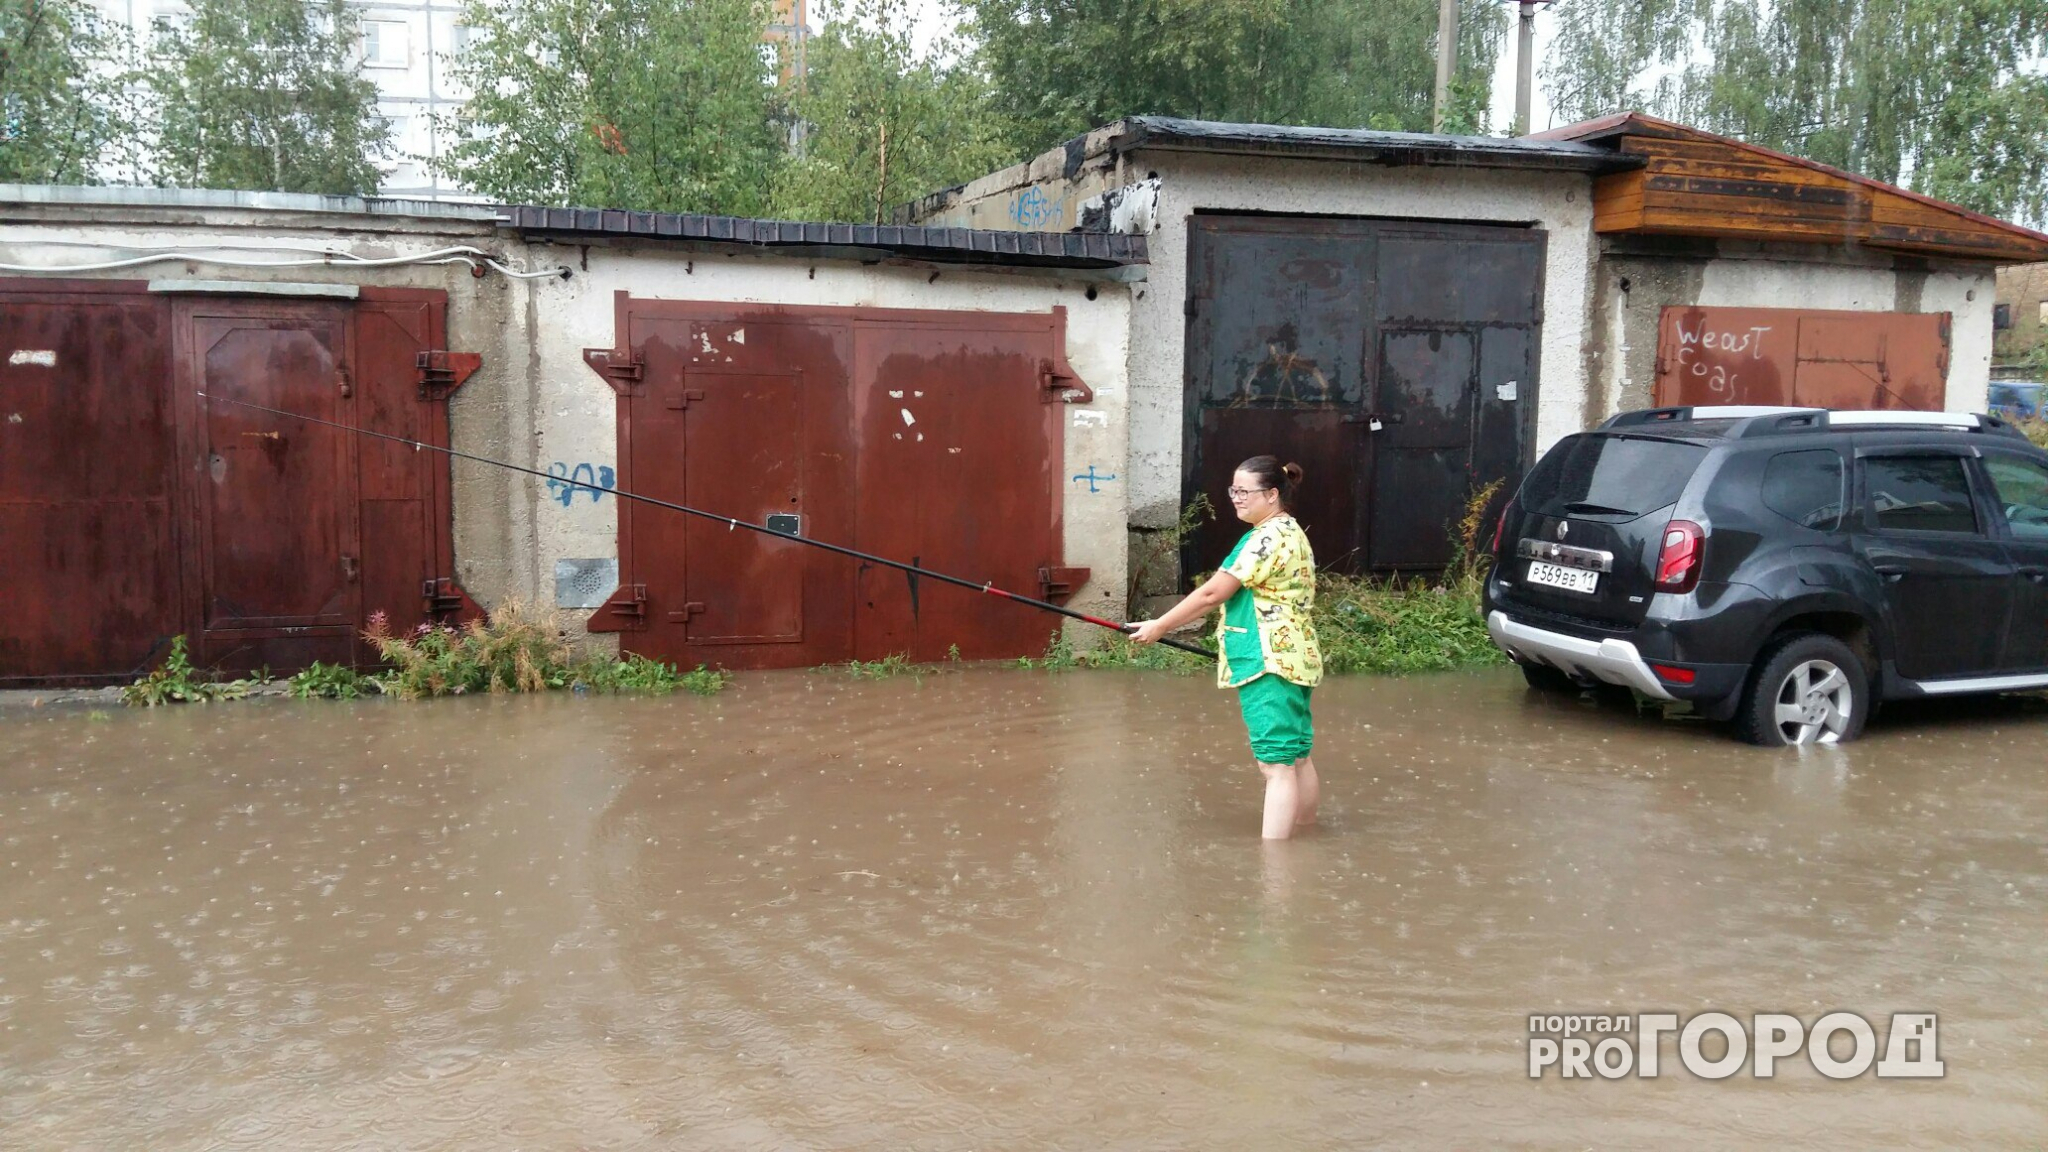 Прогноз погоды: продолжатся ли дожди в Кирове в пятницу?